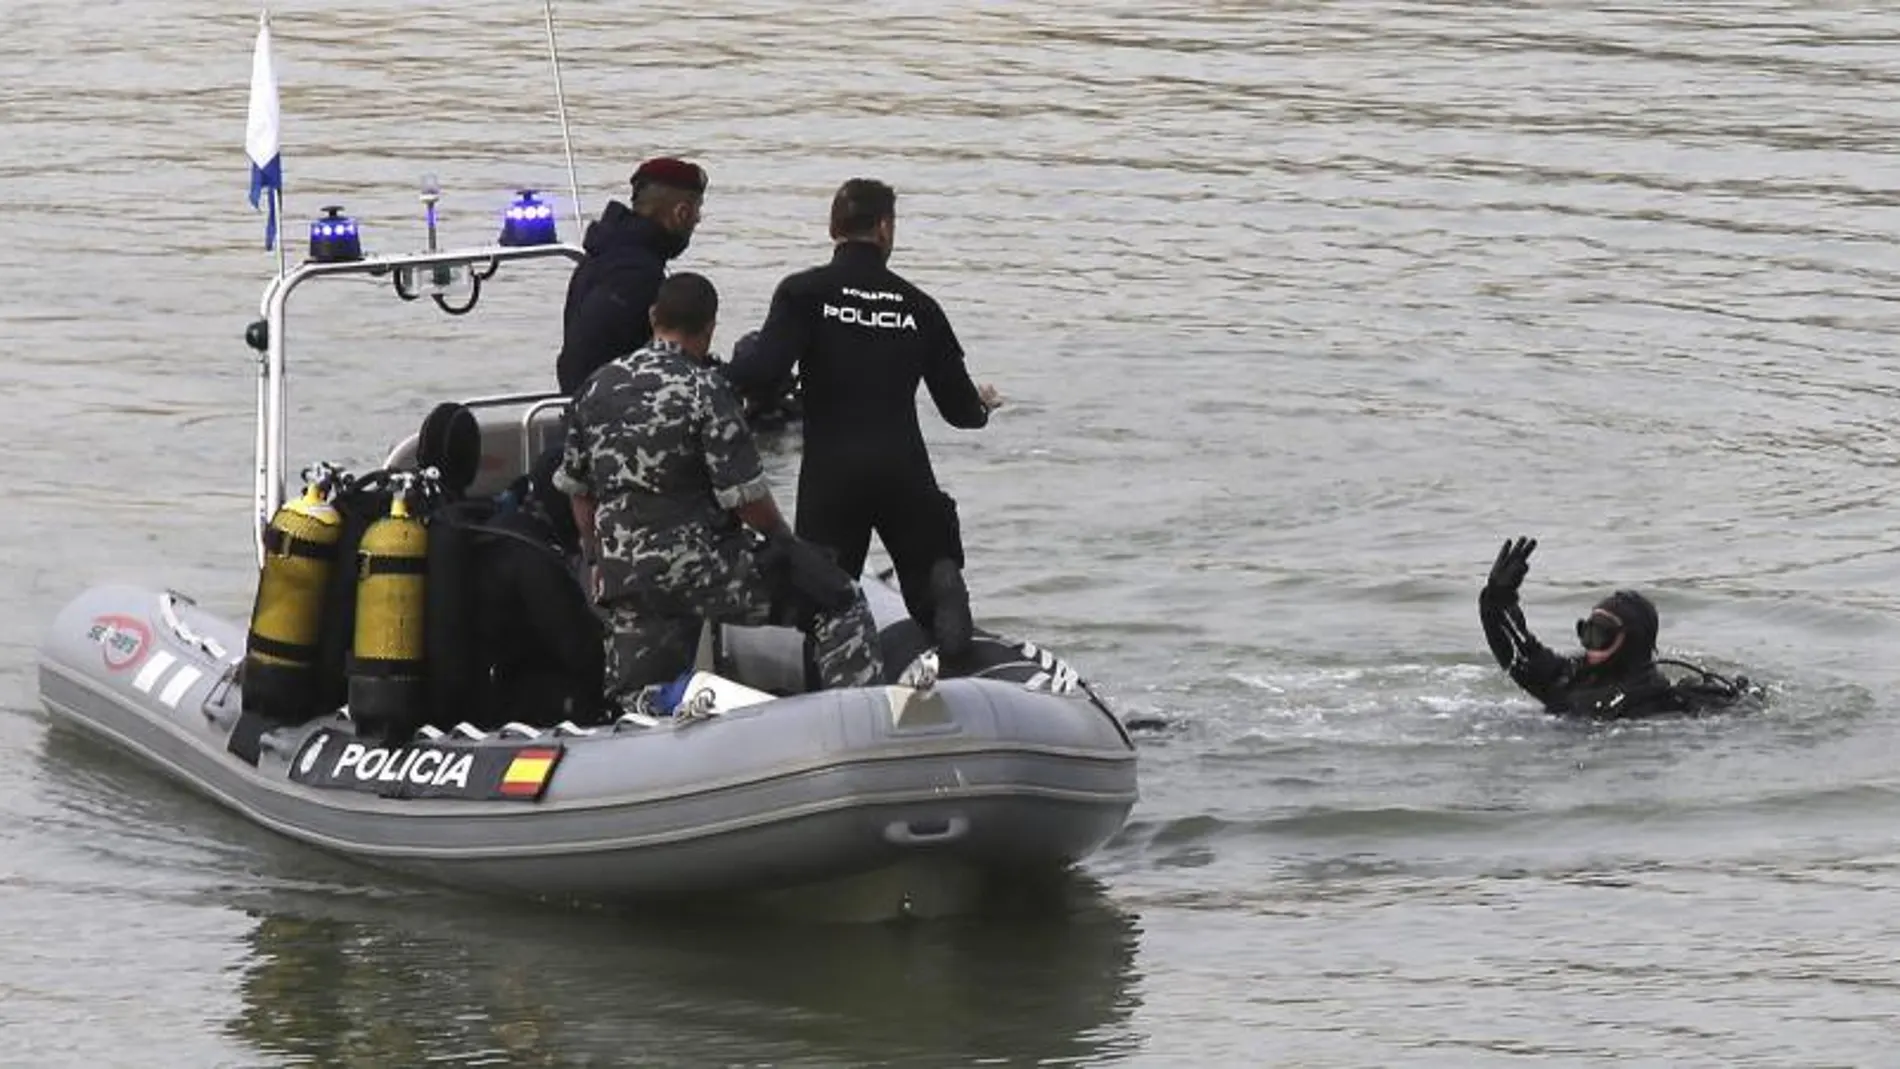 Buzos del Grupo Especial de Operaciones (GEO) de la Policía Nacional, durante una operación de búsqueda de un cadáver